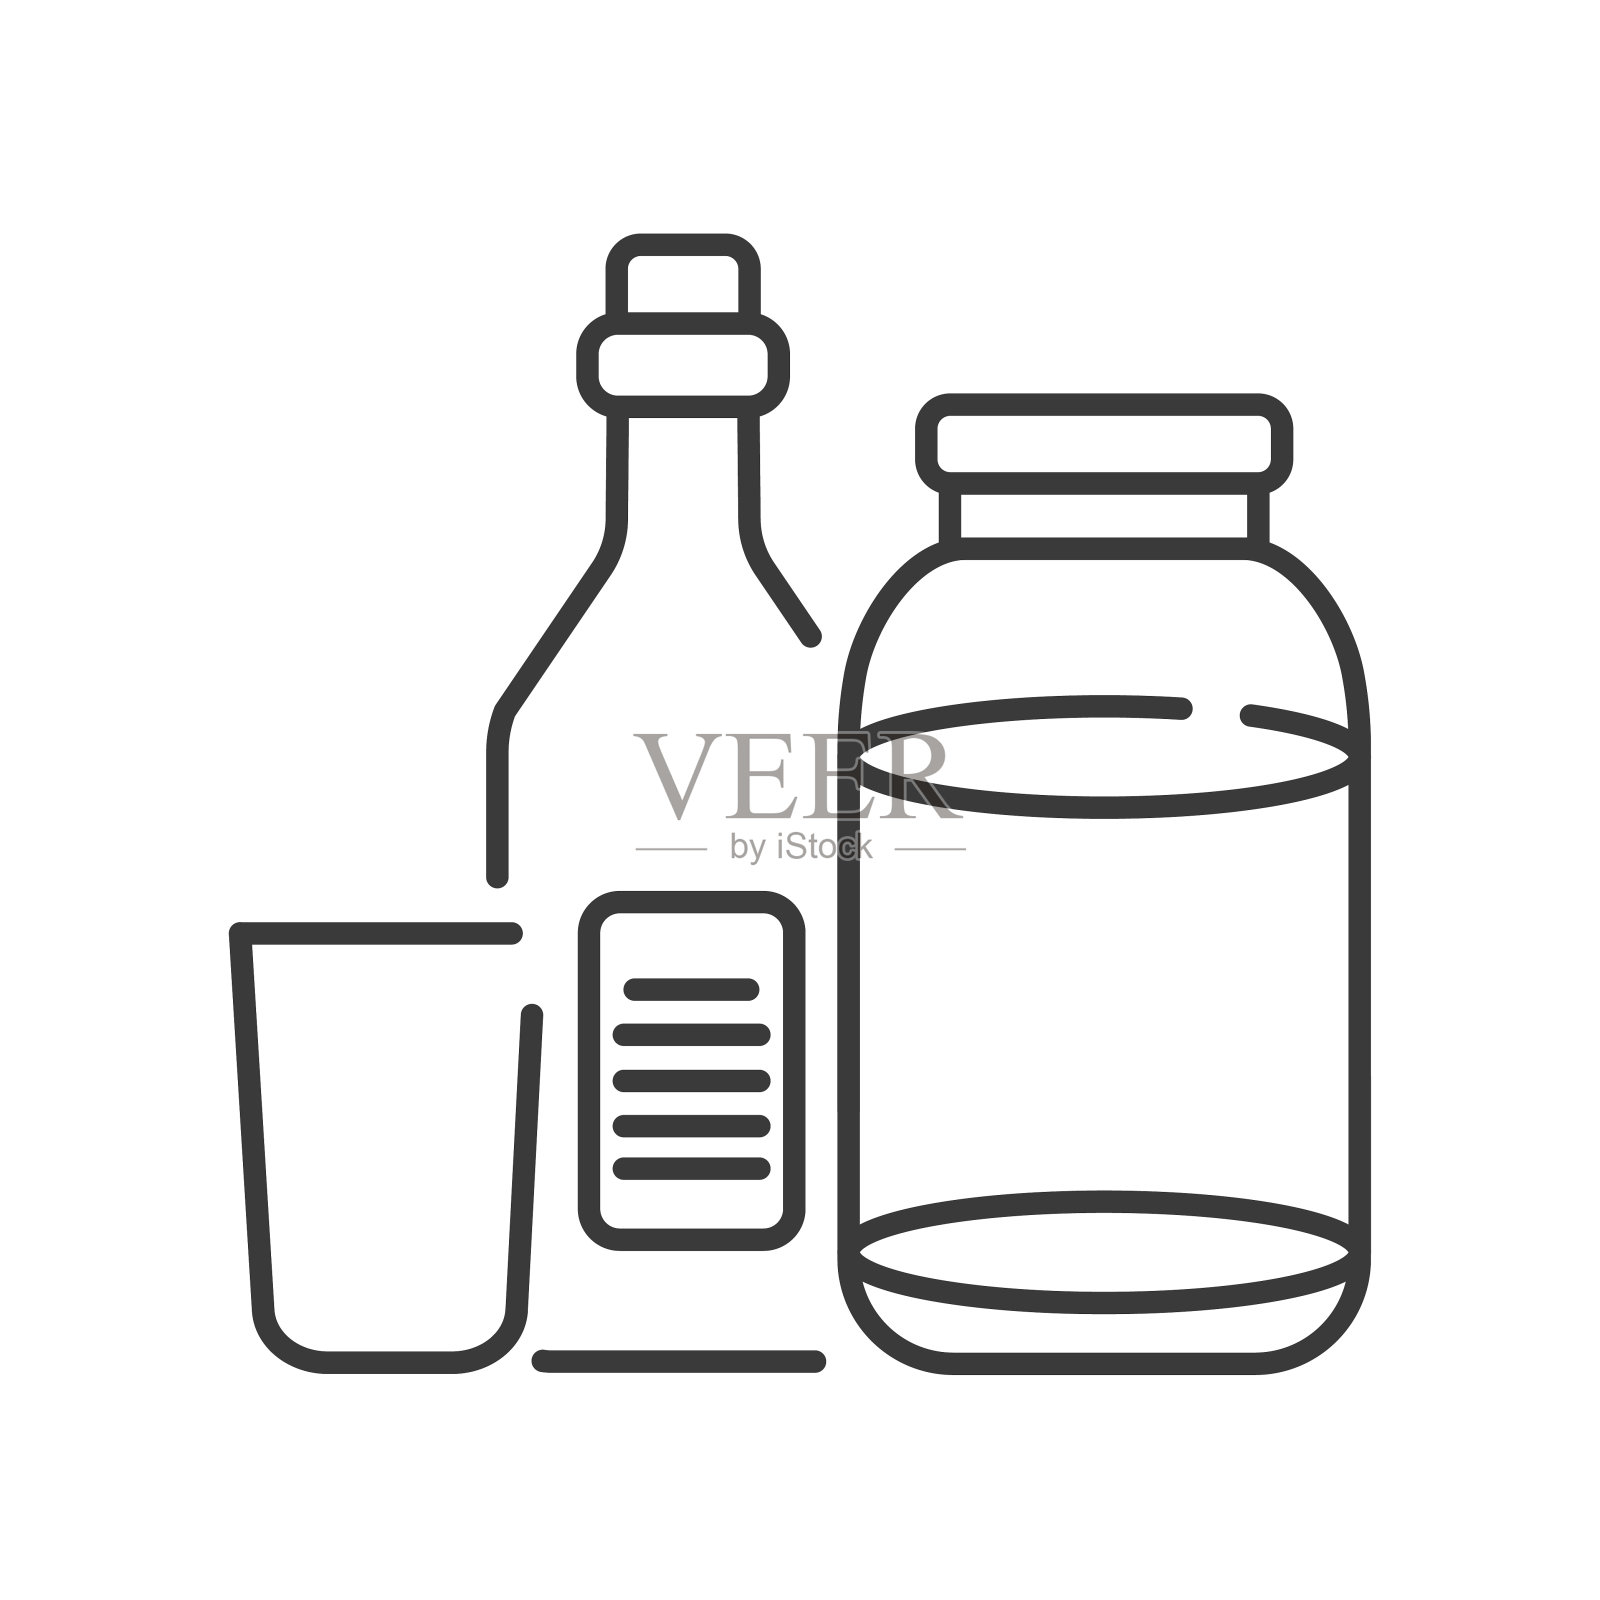 可回收玻璃工具线黑色图标。厨具象形图:瓶子、坛子、杯子。废物回收利用。垃圾分类。生态友好。UI UX GUI设计元素。可编辑的中风。插画图片素材